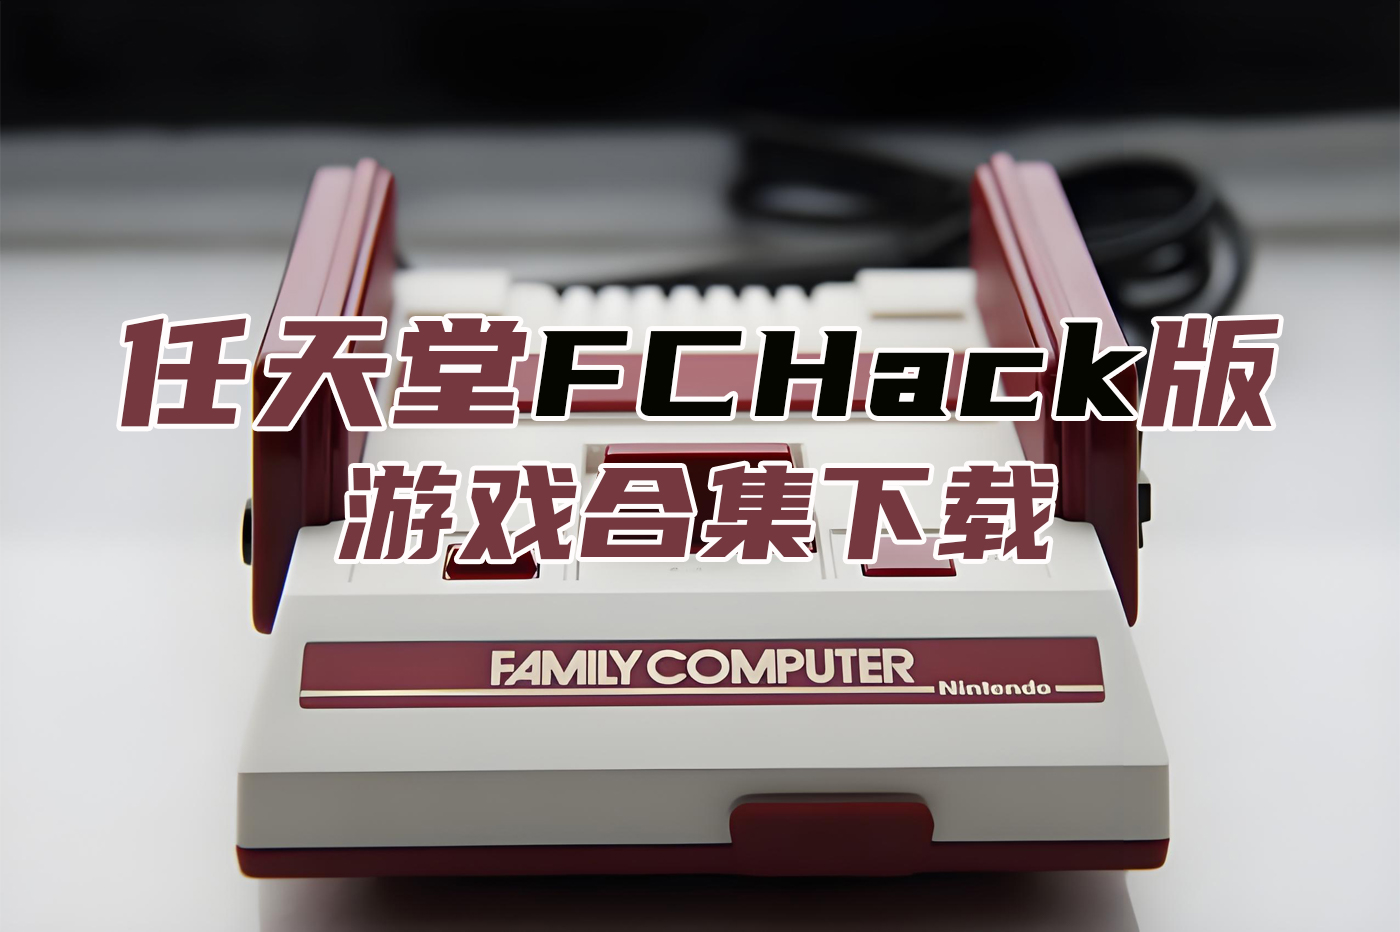 FCHack